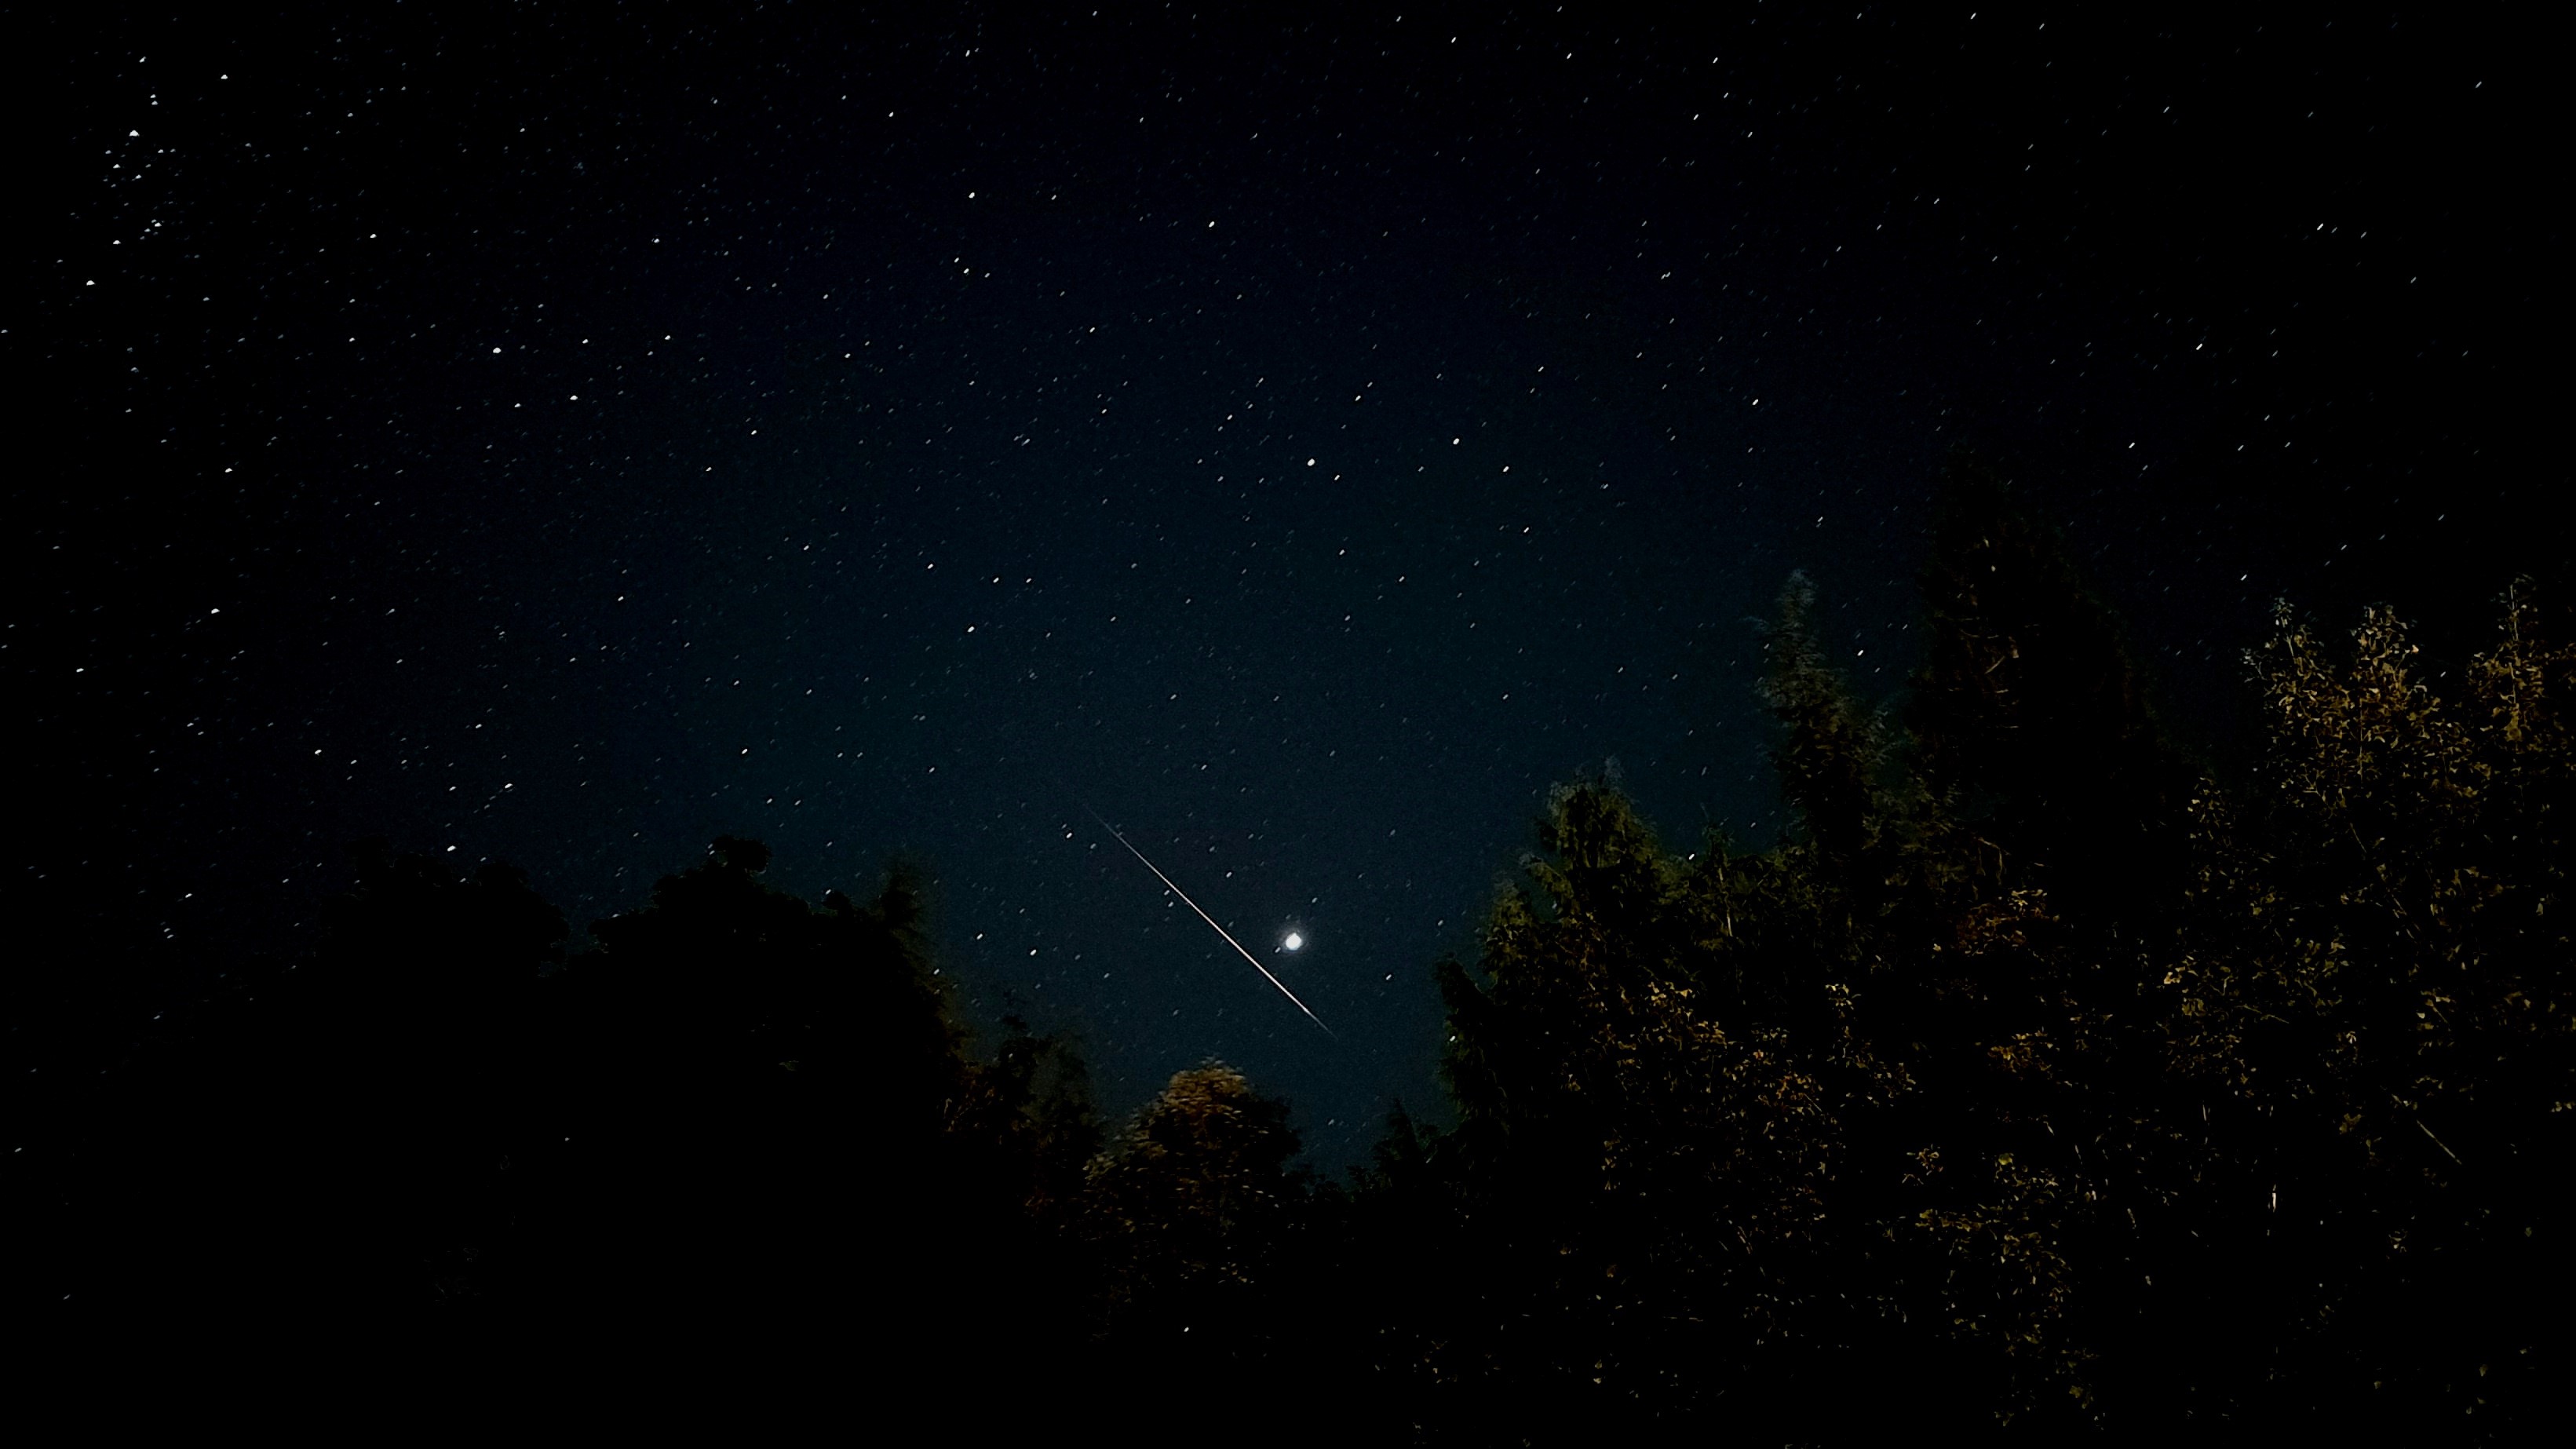 Un meteoro prominente atraviesa el cielo bajo el brillante planeta Júpiter.